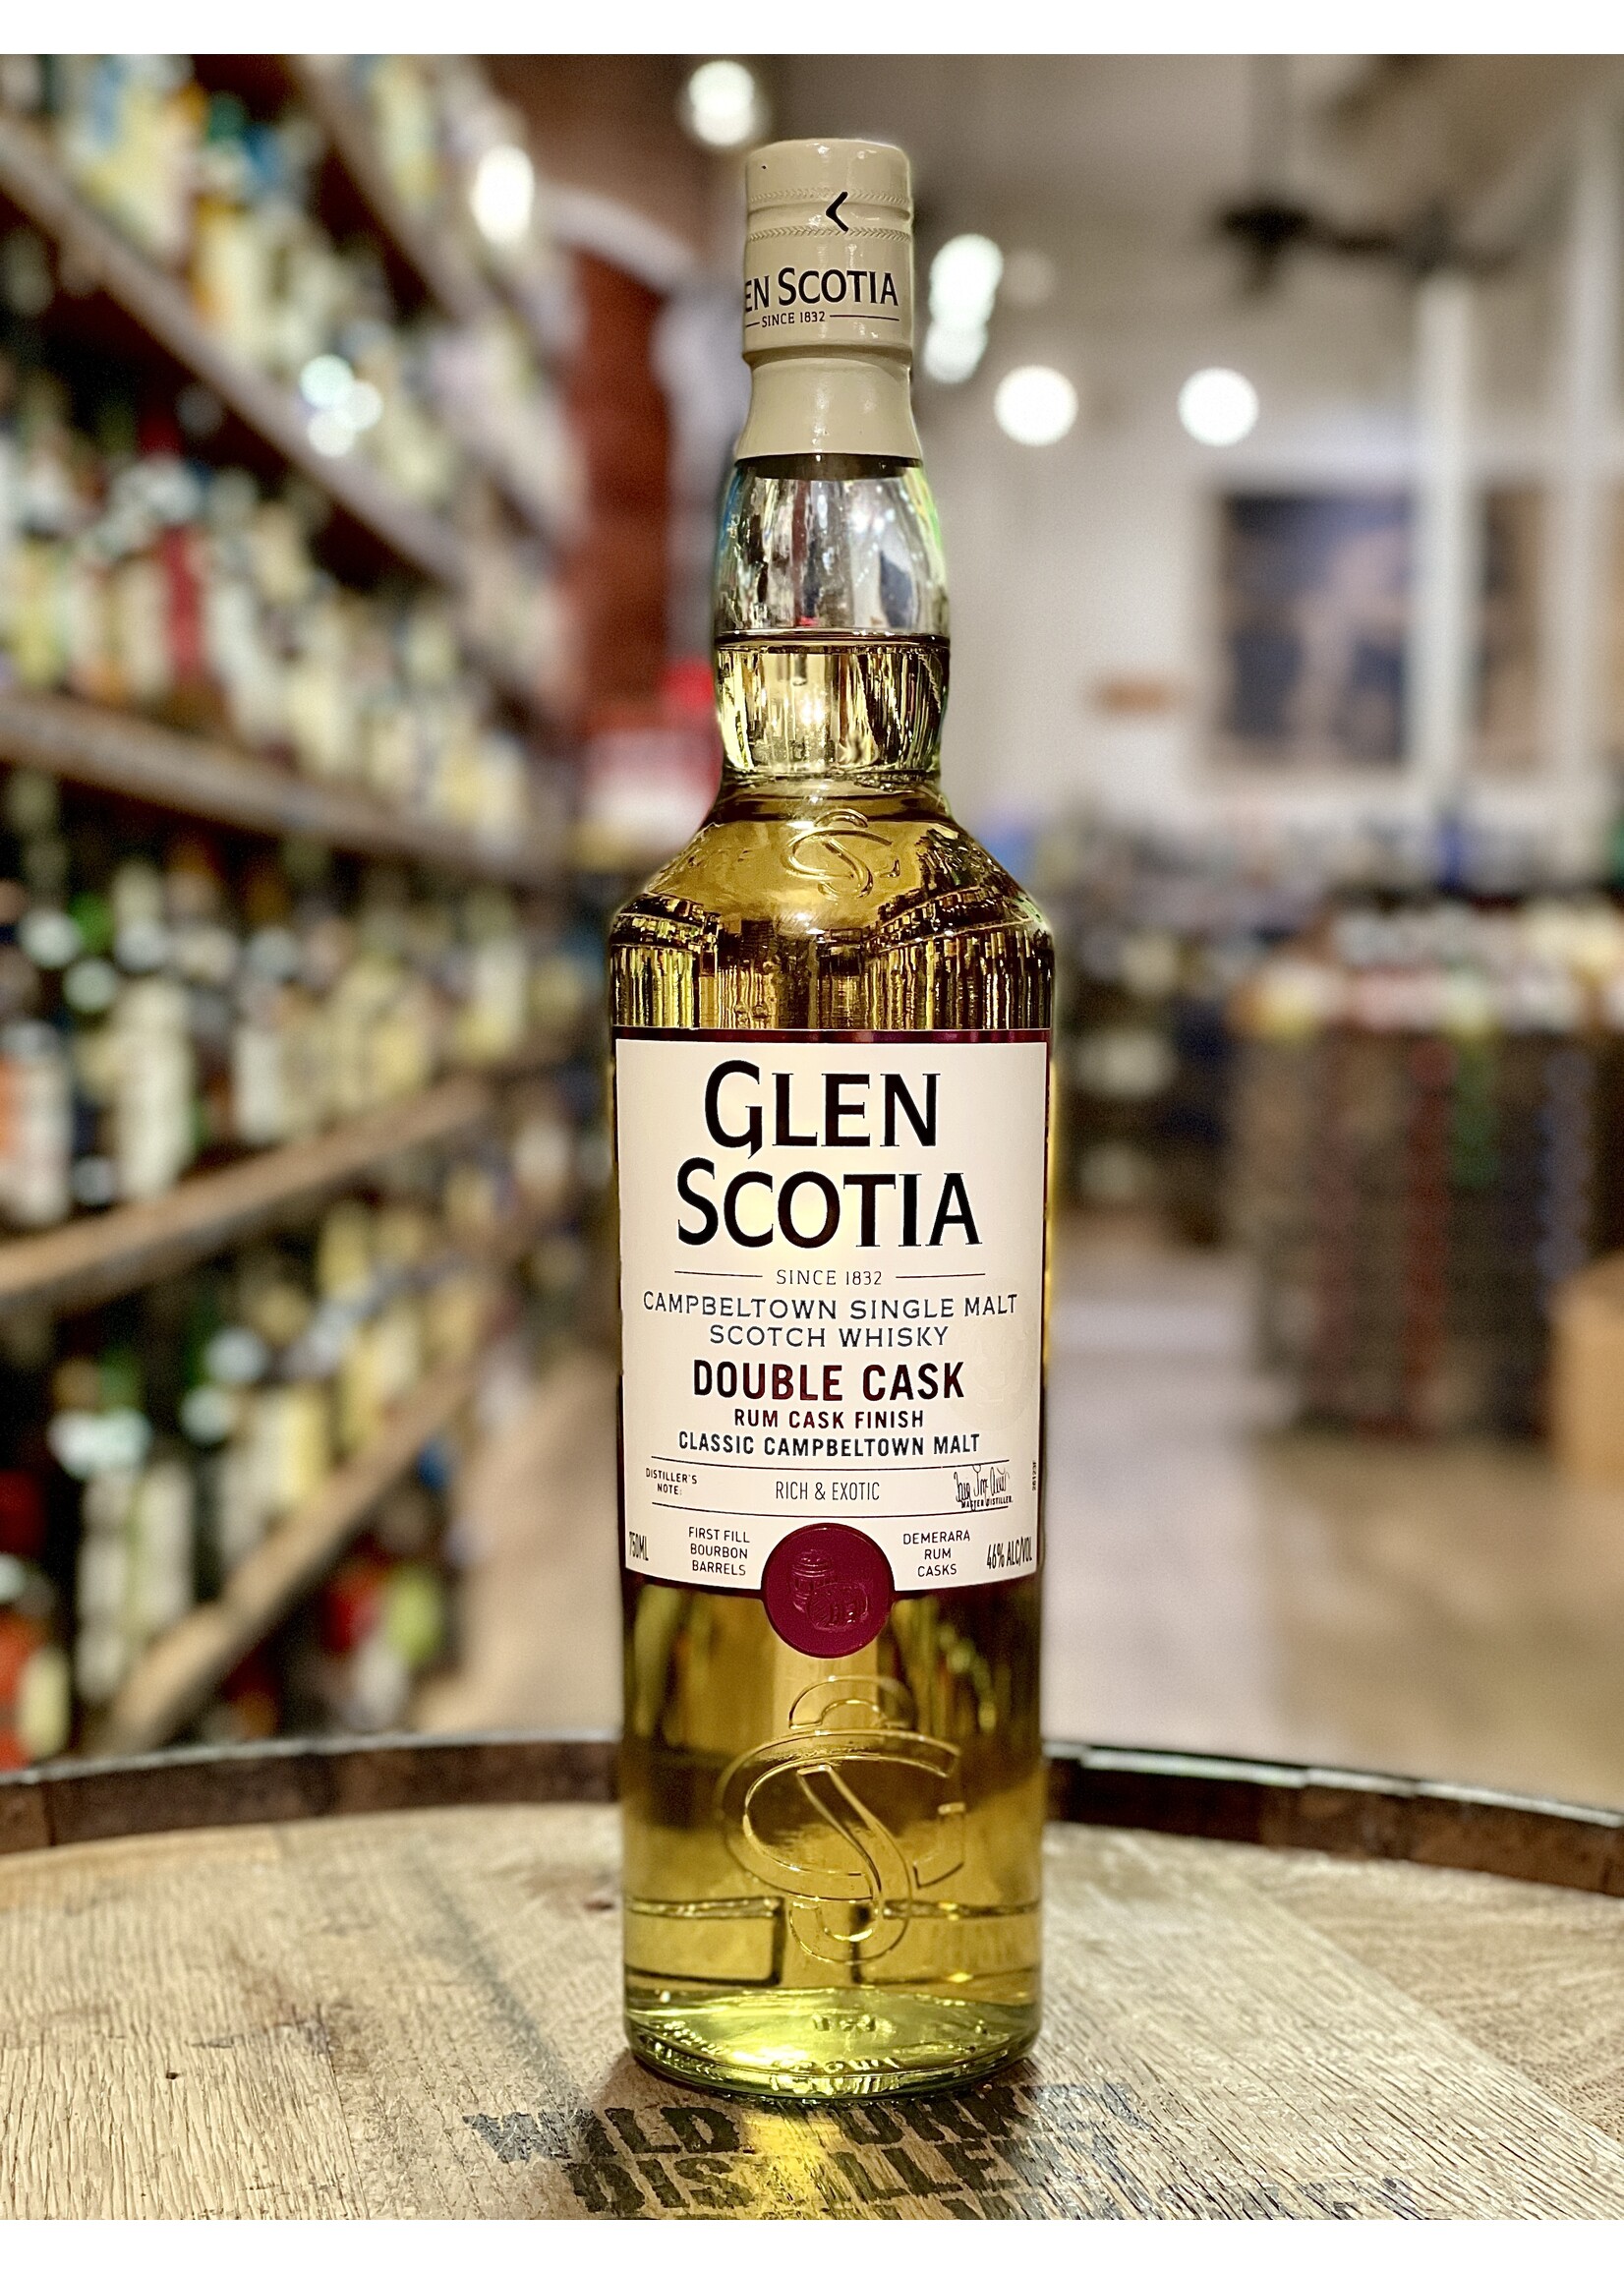 Glen Scotia Glen Scotia / Double Cask Demerara Rum Cask Finish Single Malt 46% abv / 750mL